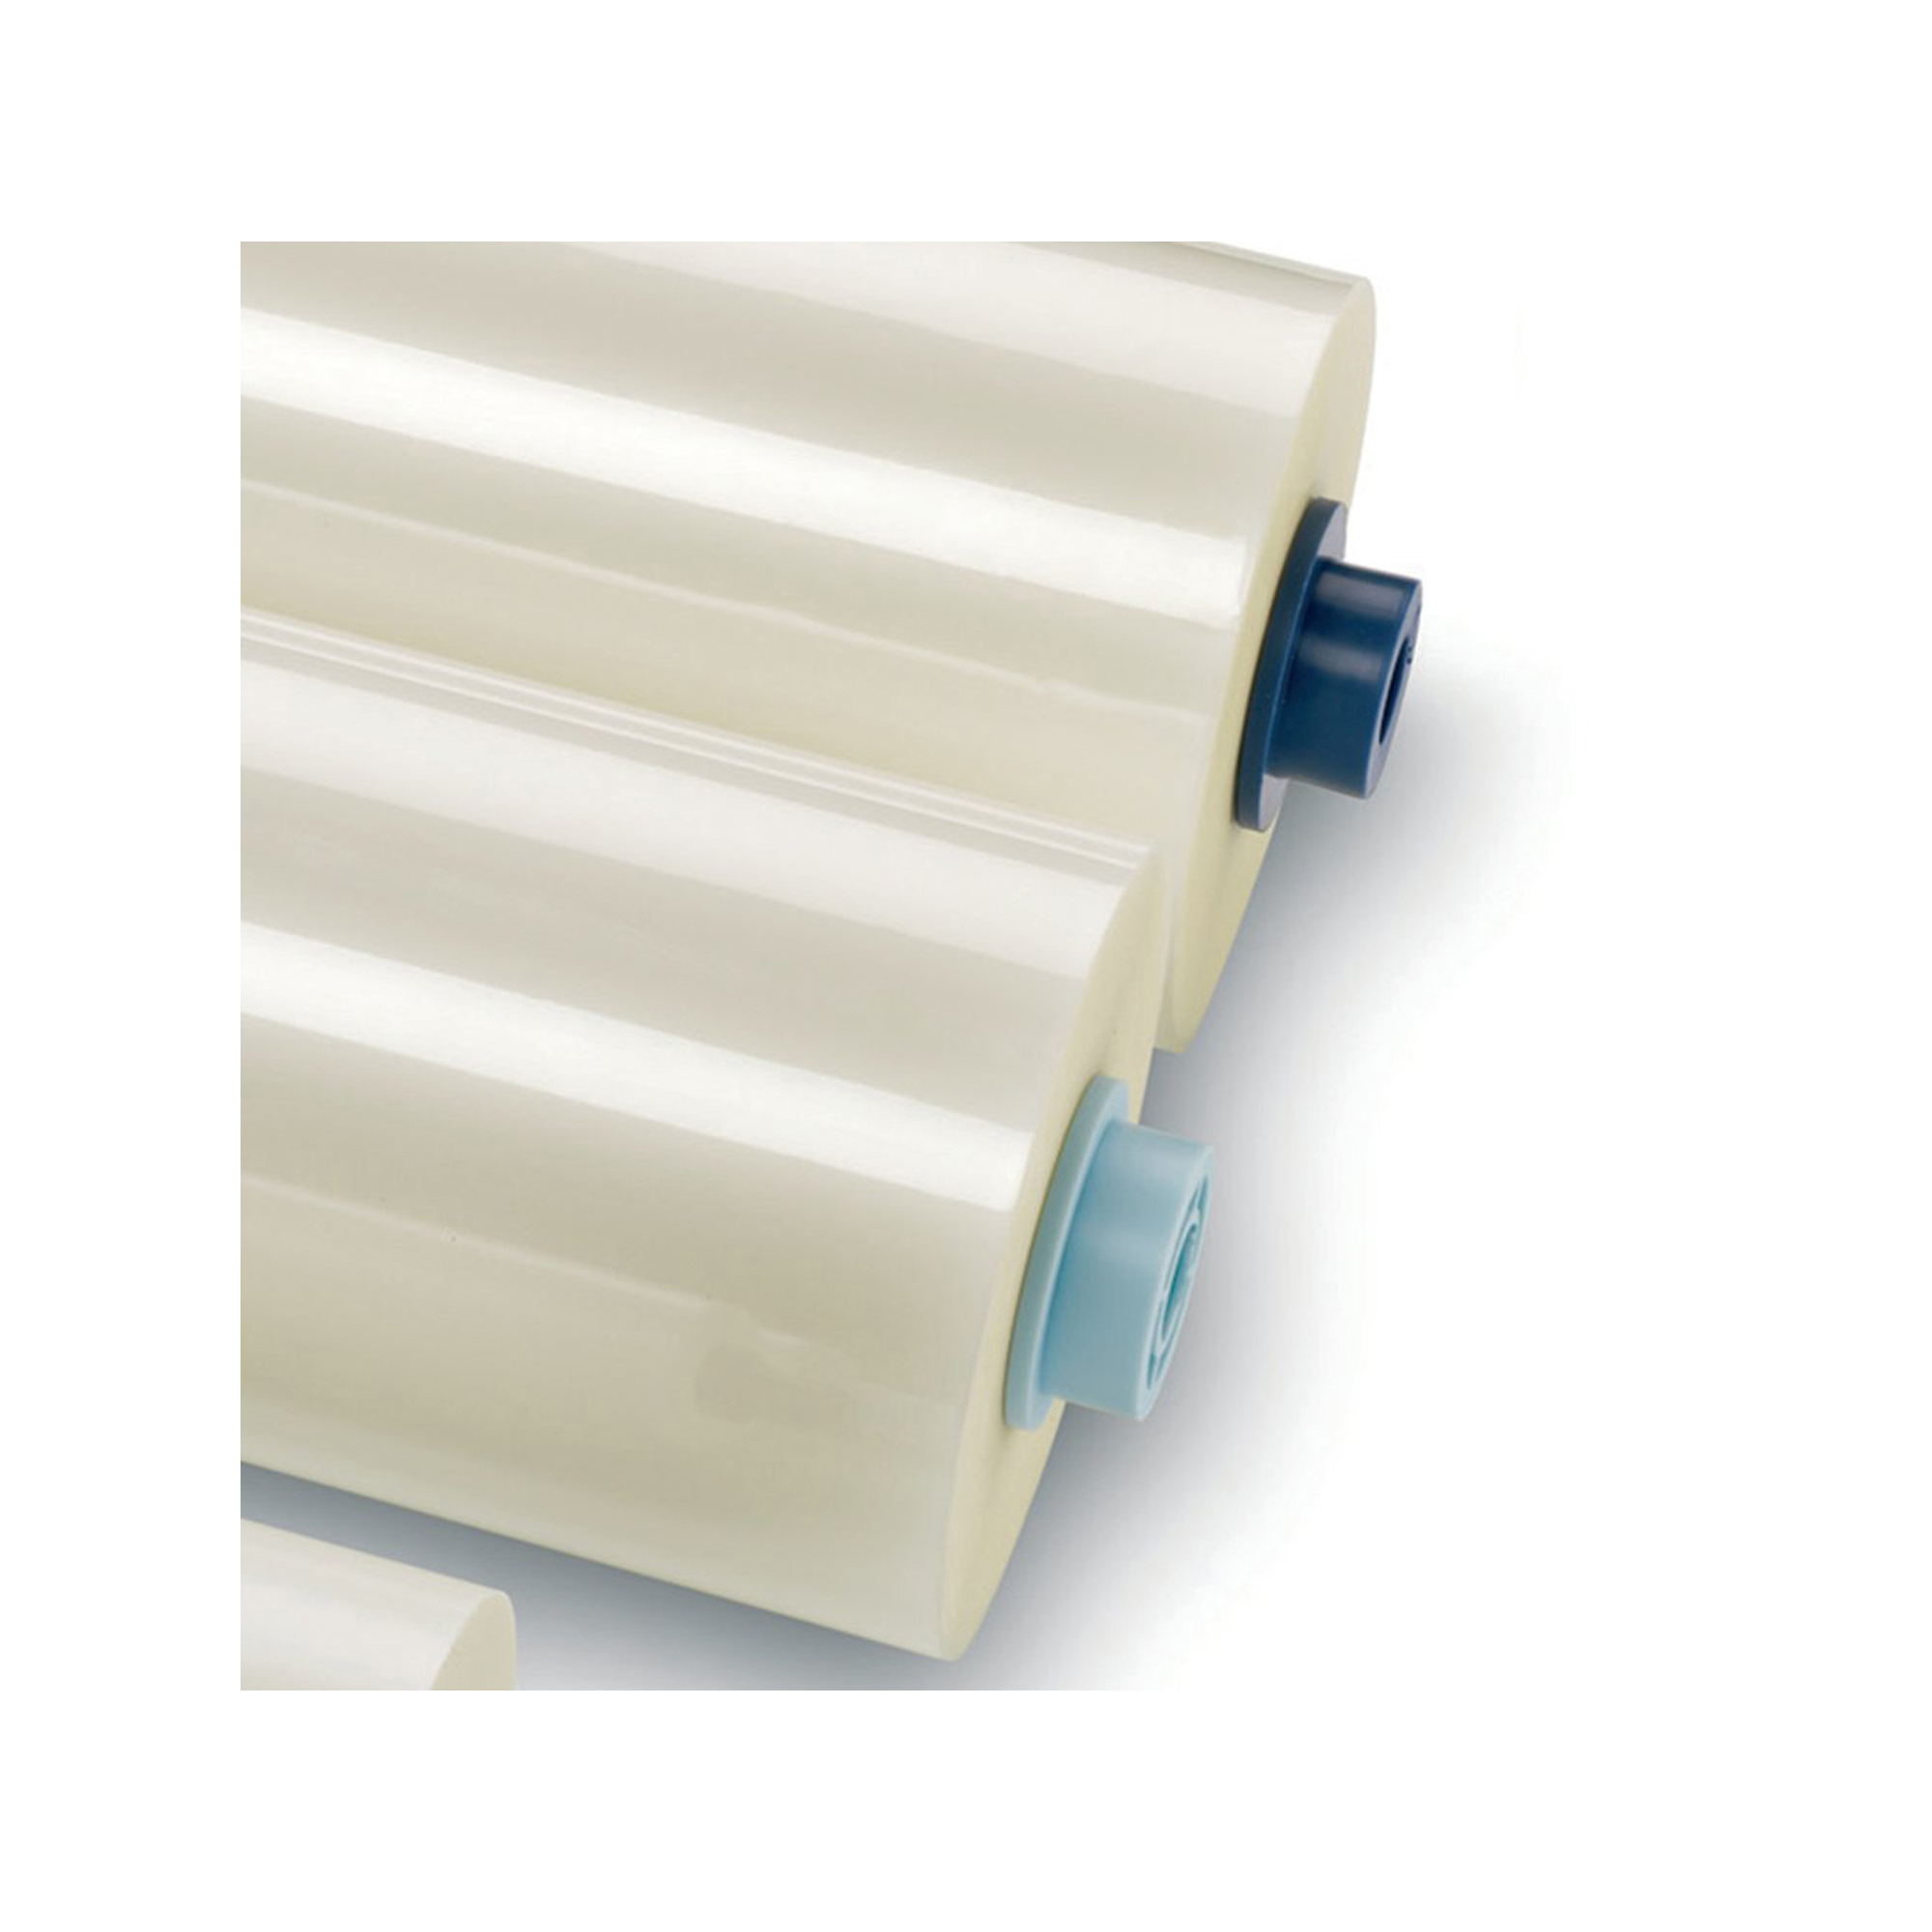 Pellicola opaca Nap2 per plastificazione - 635 mm x 150 mt - 75 micron - GBC - conf. 2 bobine